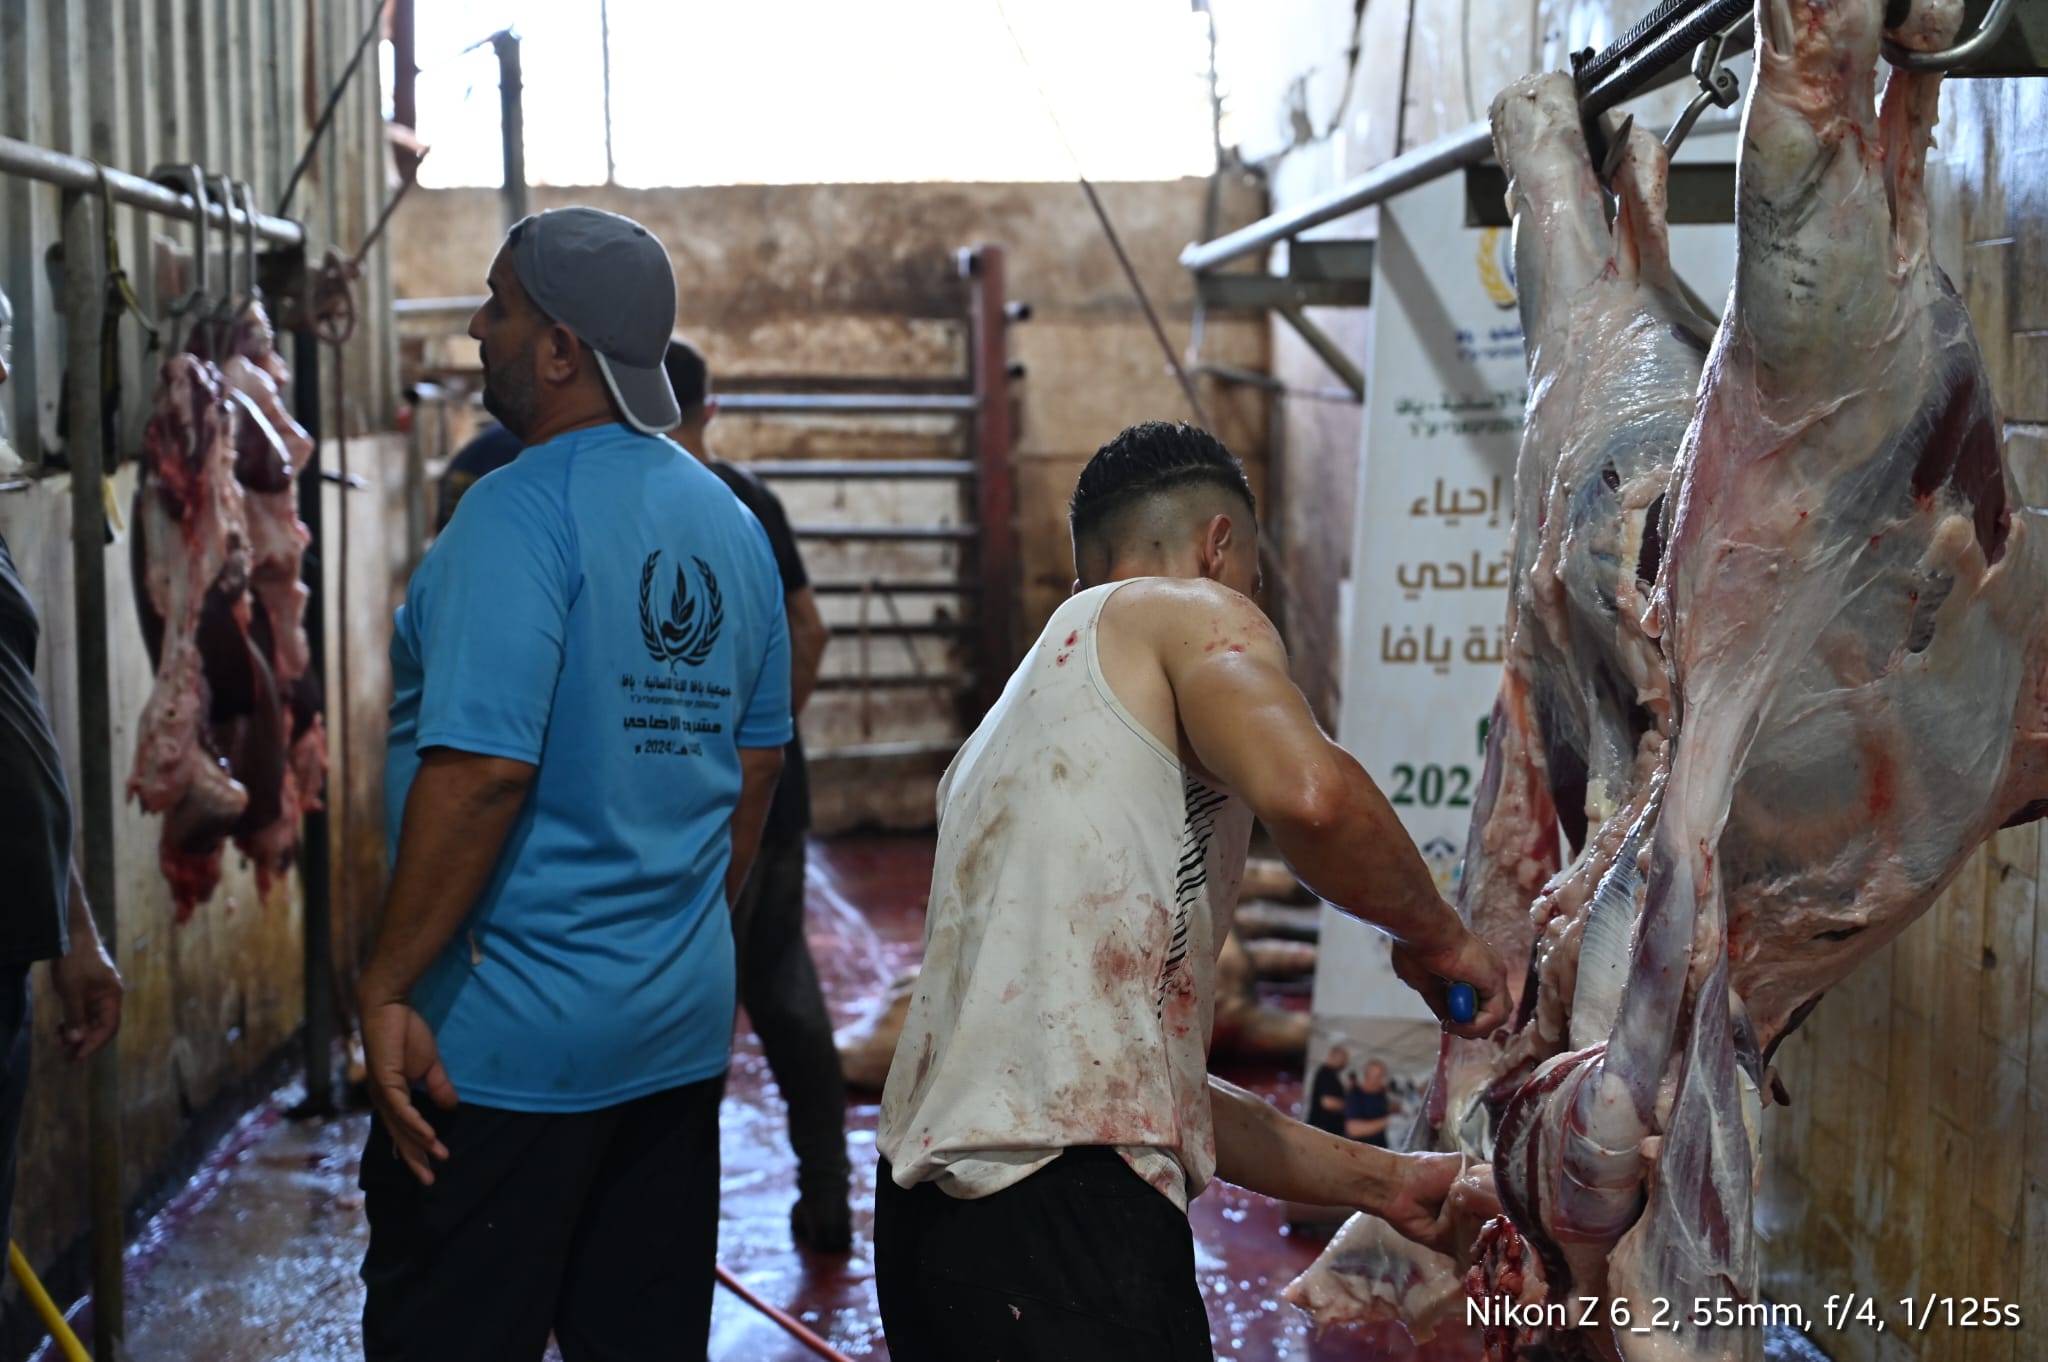 جمعية يافا  تباشر في ذبح 27 عجلا و18 خروفا هي حصيلة أضاحي مدينة يافا